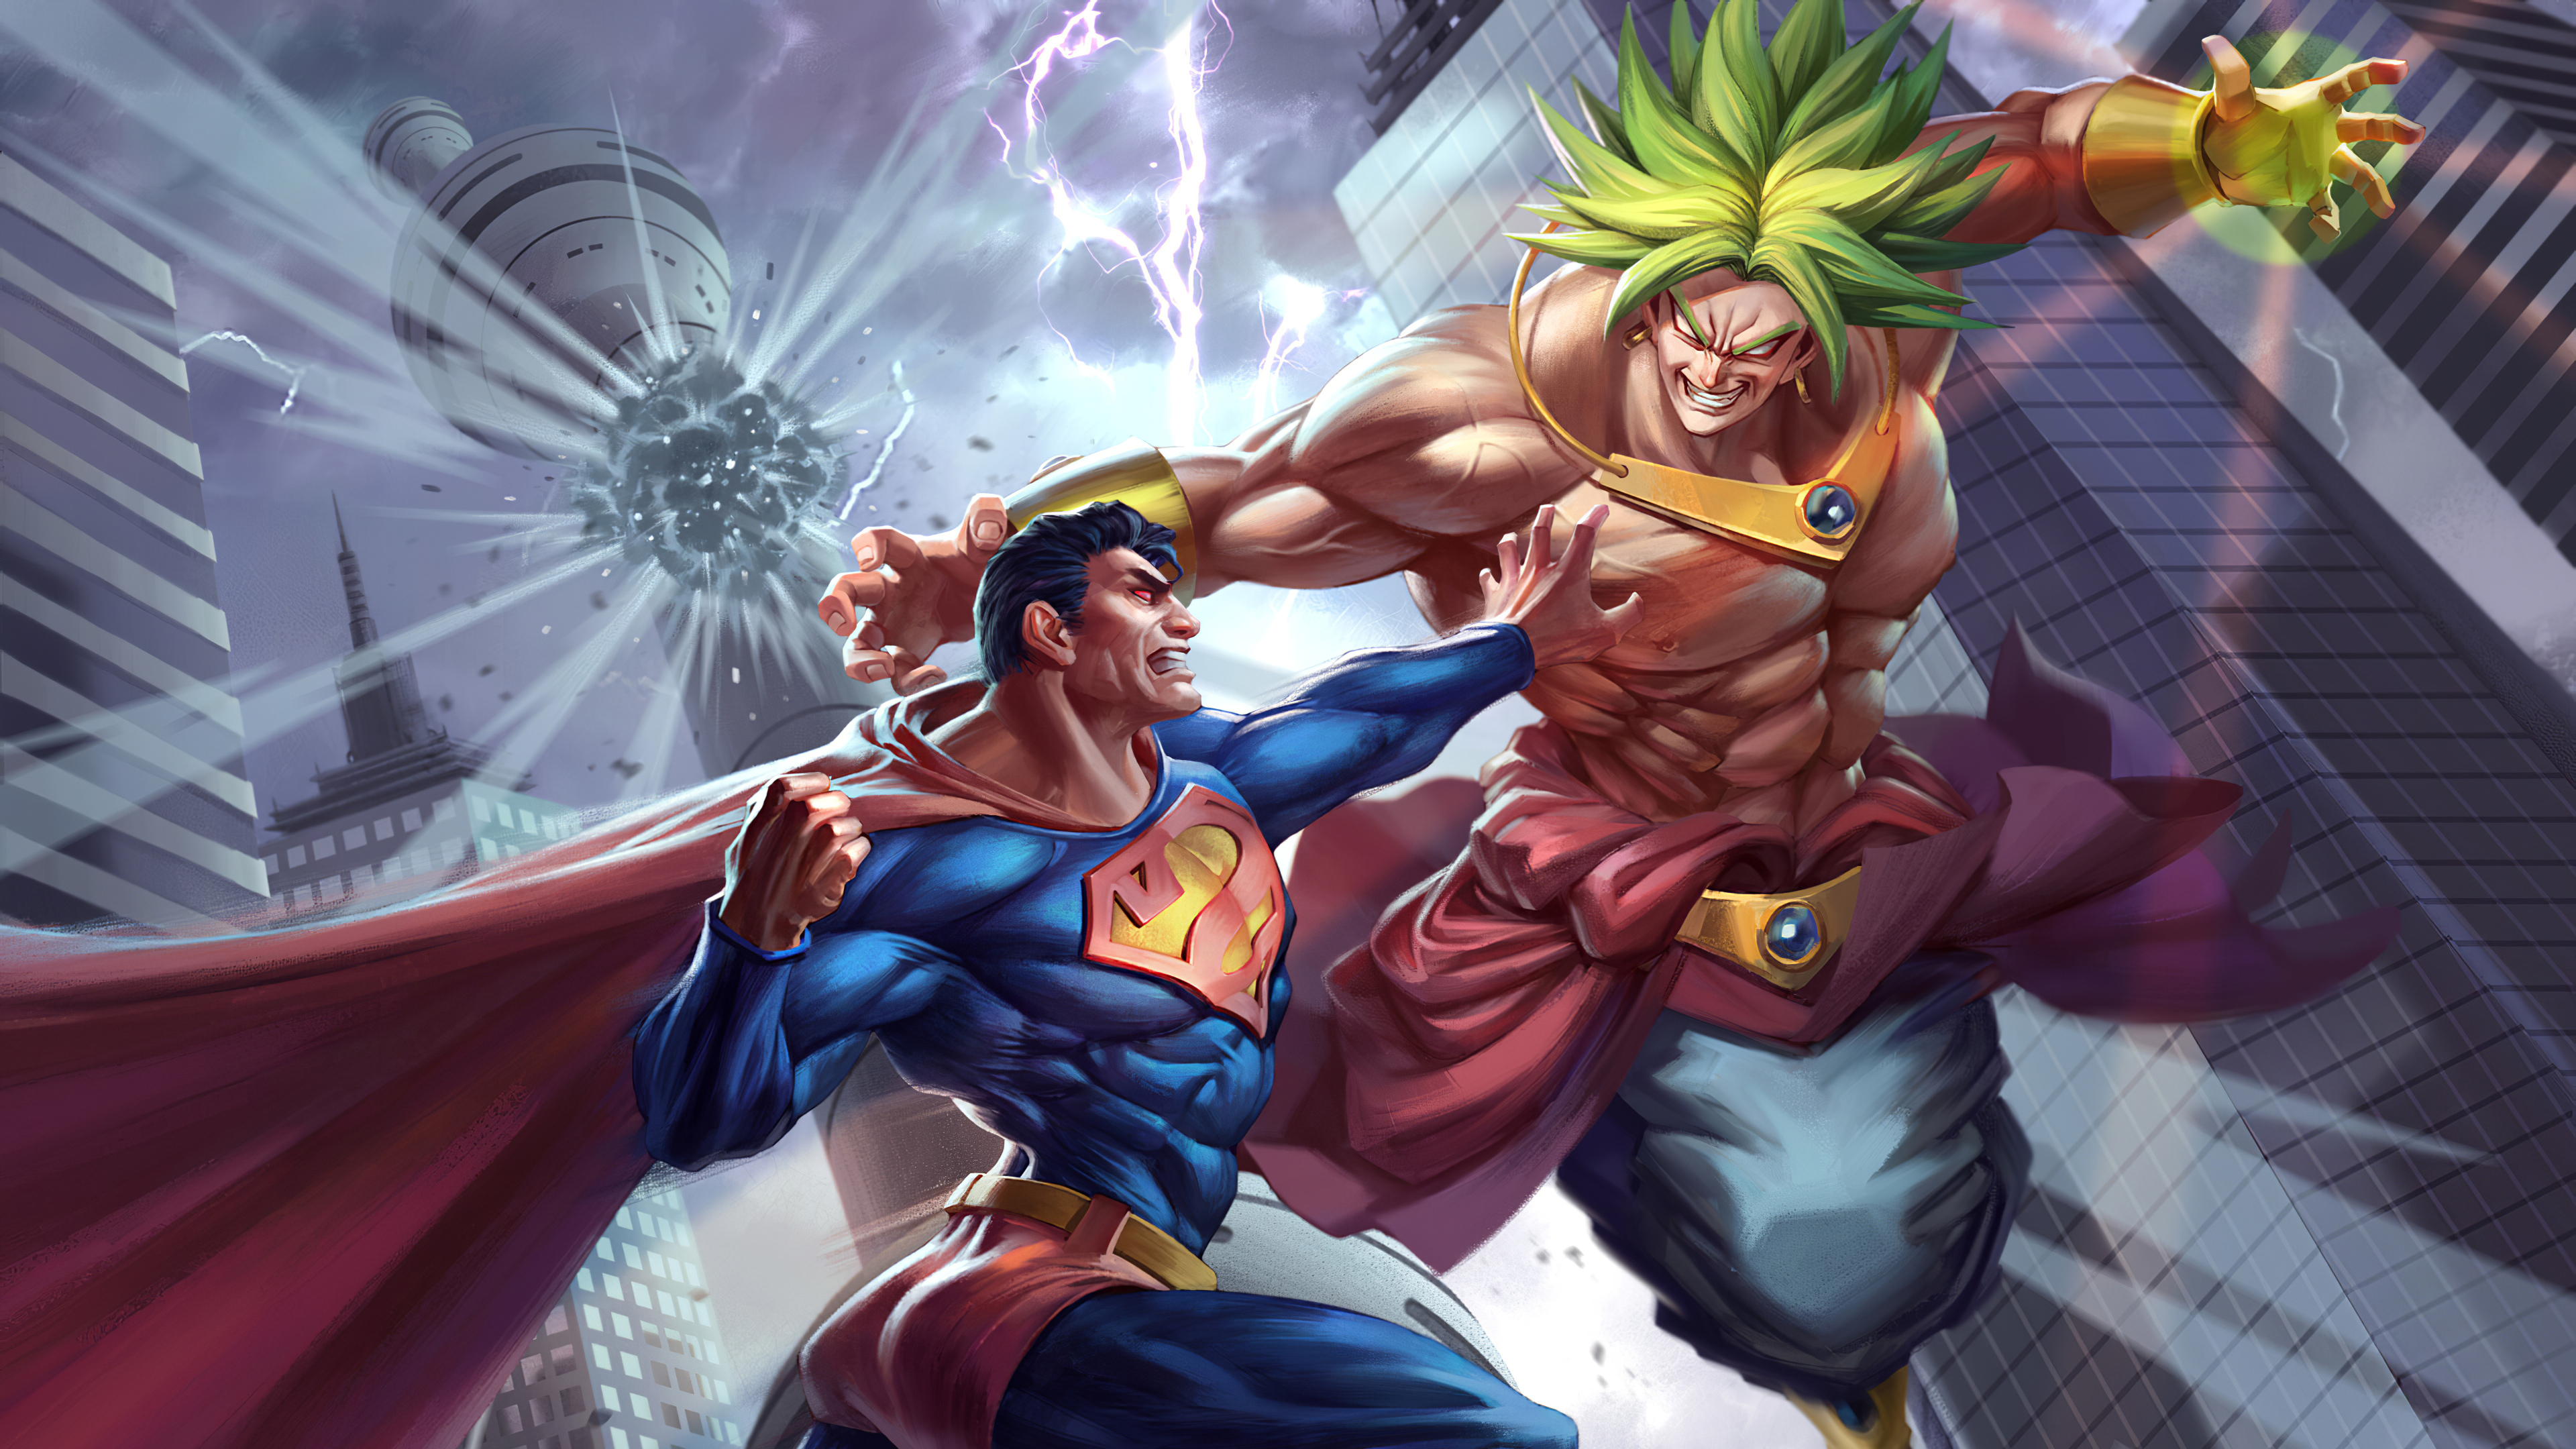 Superman vs Goku Wallpaper 4k Ultra HD ID:5217